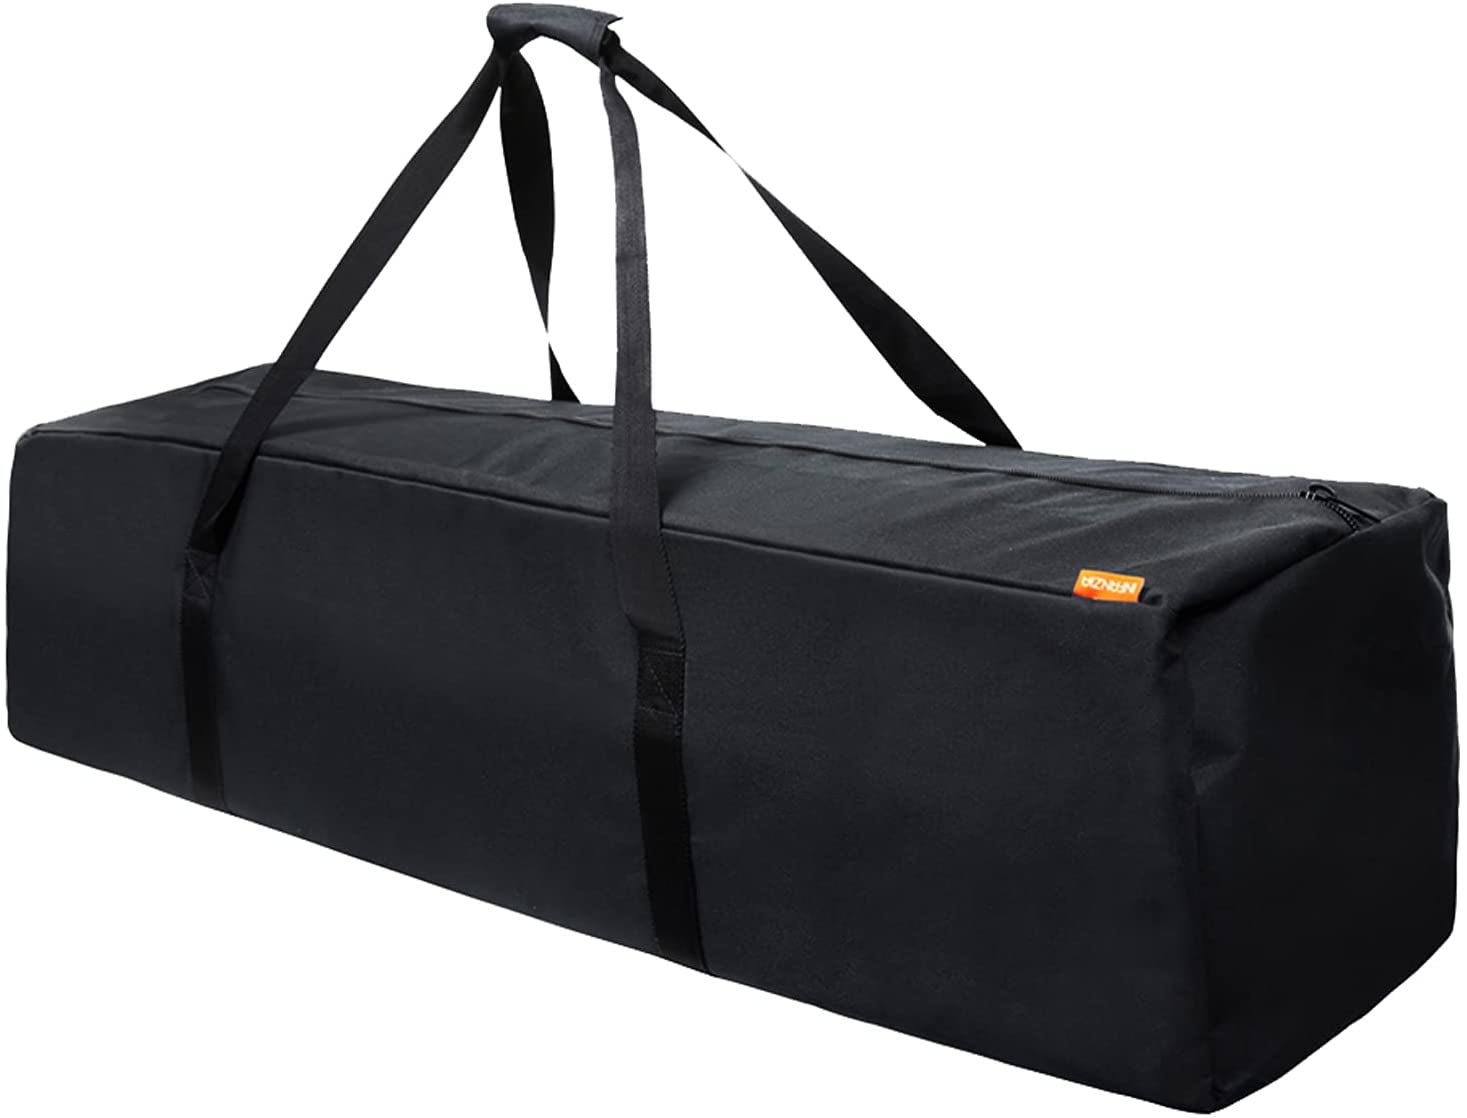 INFANZIA 45 Inch Zipper Duffel Travel Sports Equipment Bag, Water